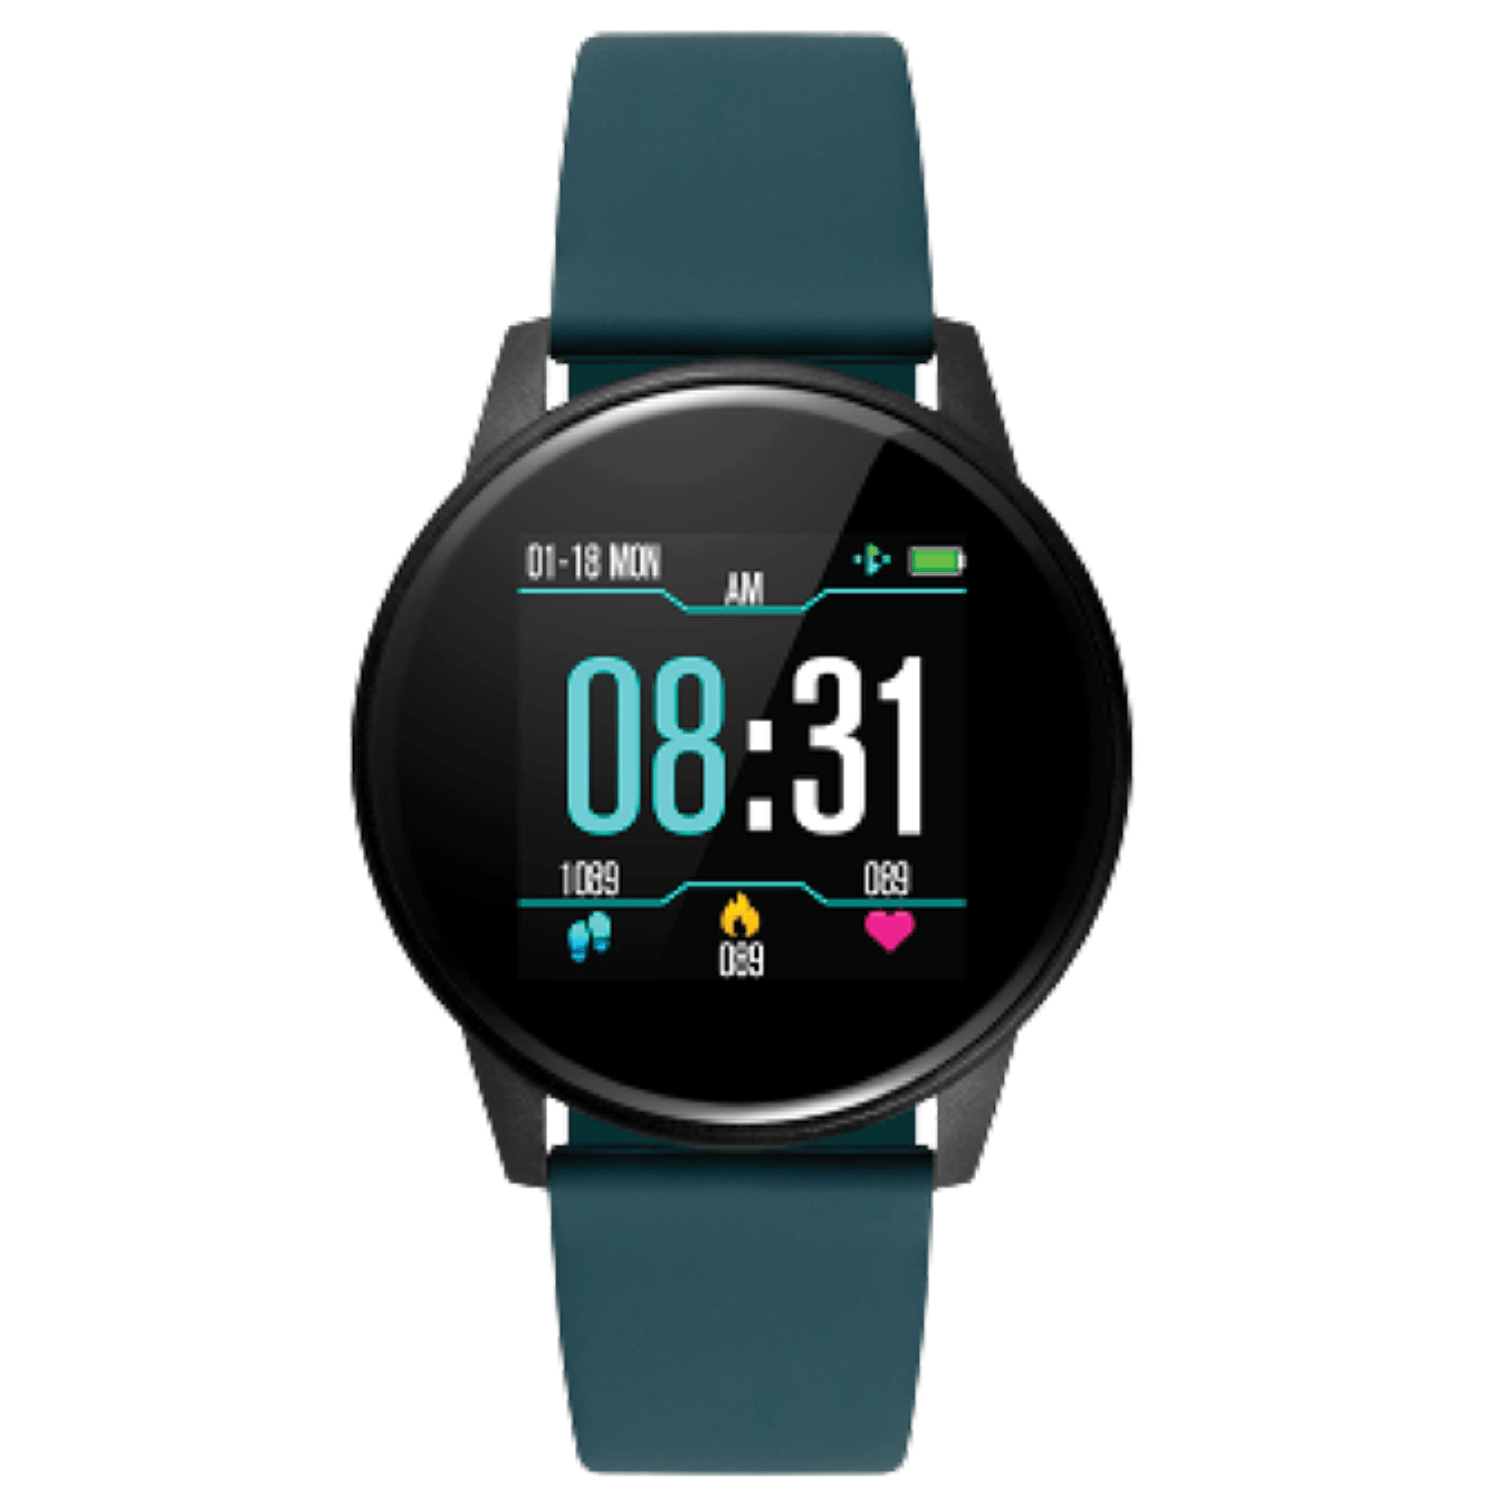 Ρολόι Smartwatch DAS4 SG60 203050262 με μπλε πετρόλ λουράκι σιλικόνης.